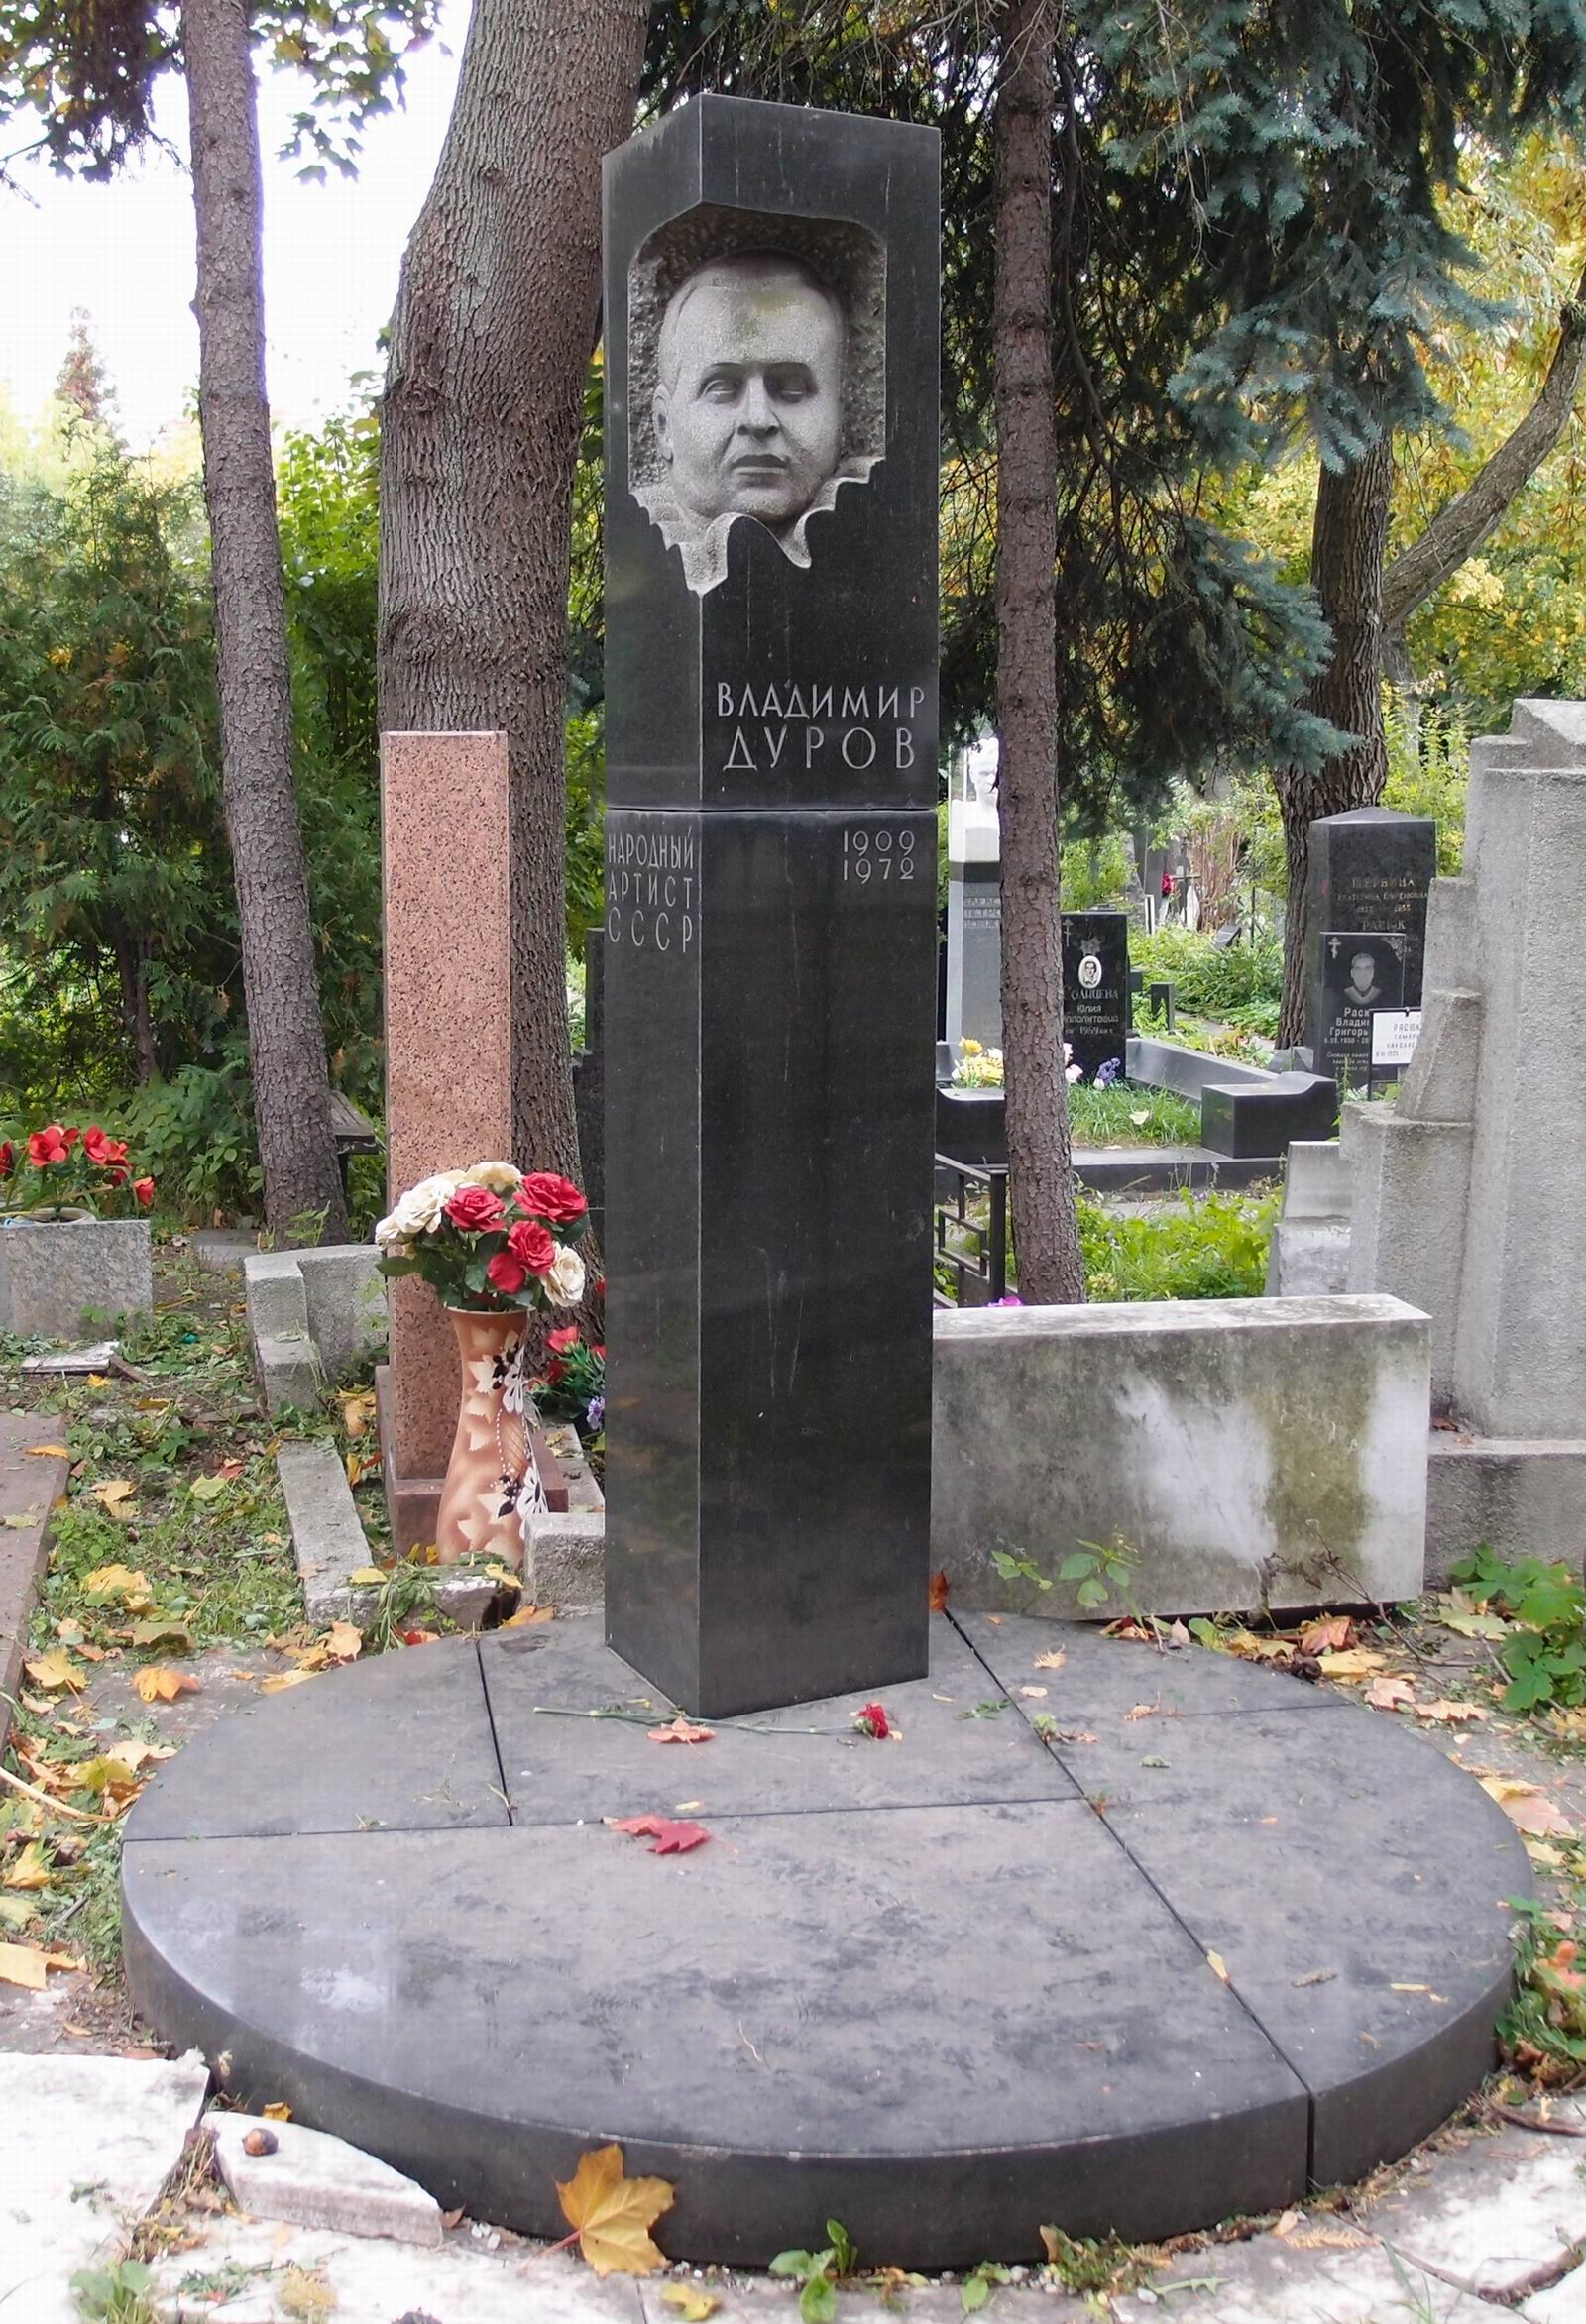 Памятник на могиле Дурова В.Г. (1909-1972), ск. Г.Нерода, арх. С.Кучанов, на Новодевичьем кладбище (3-64-1).